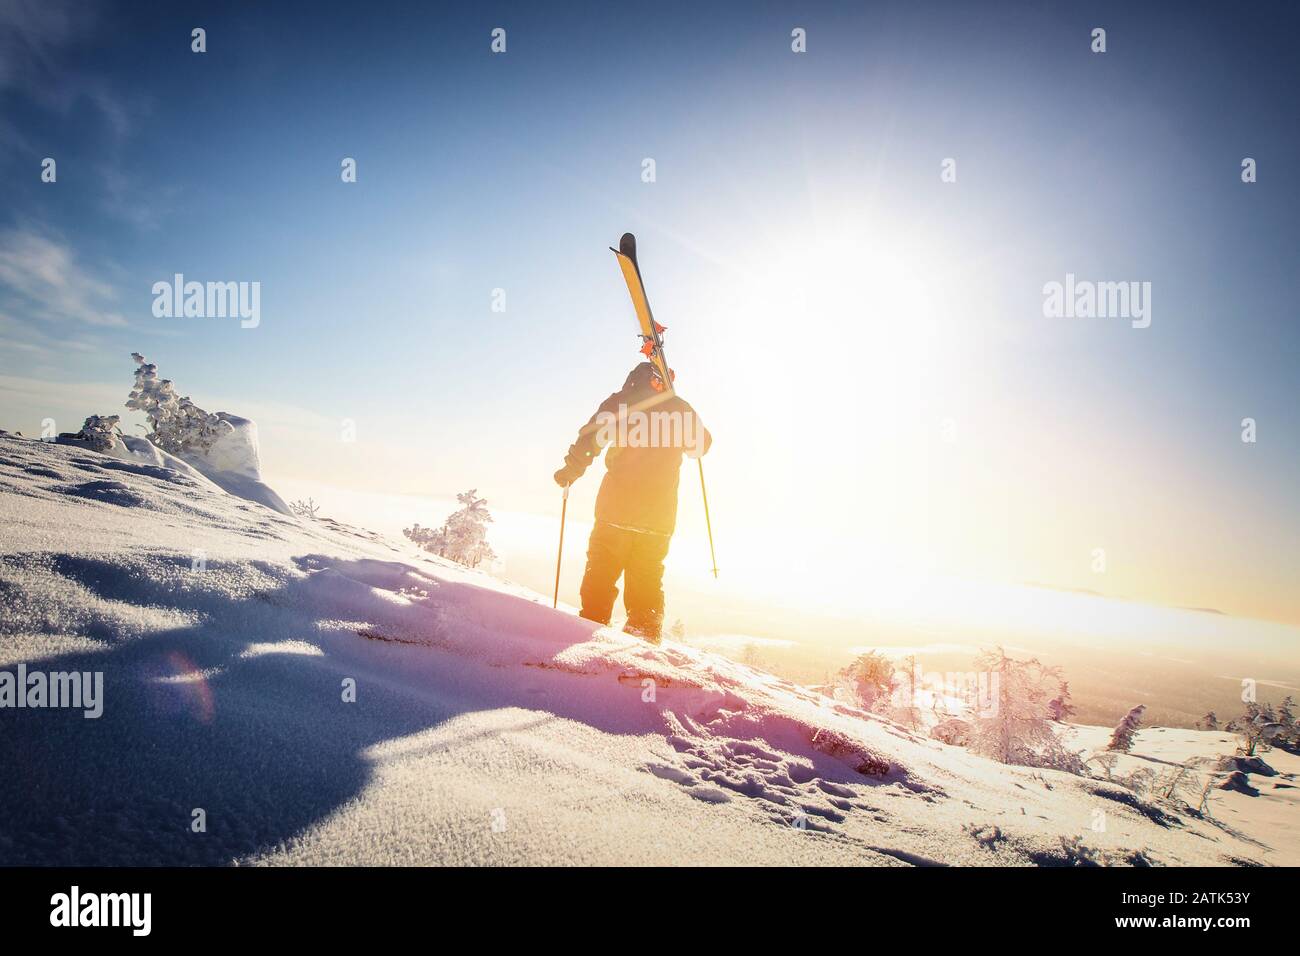 Extremsport-Skiing-Konzept. Freeride Winter im frischen Pulverschnee Stockfoto